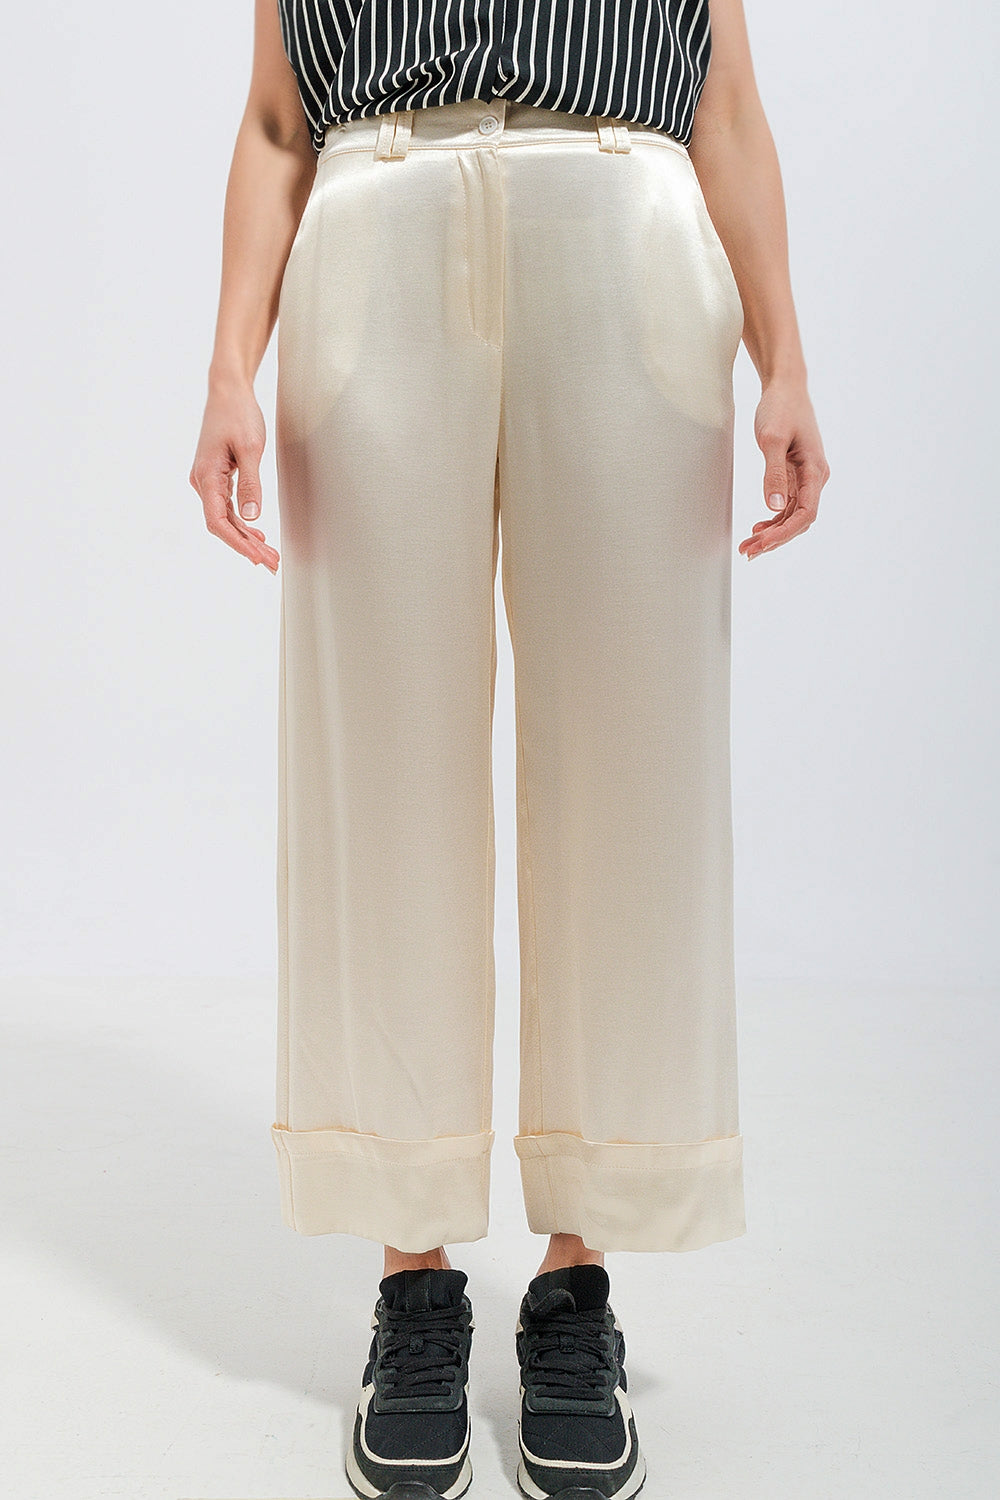 Q2 Pantaloni con fondo ampio in raso colore crema